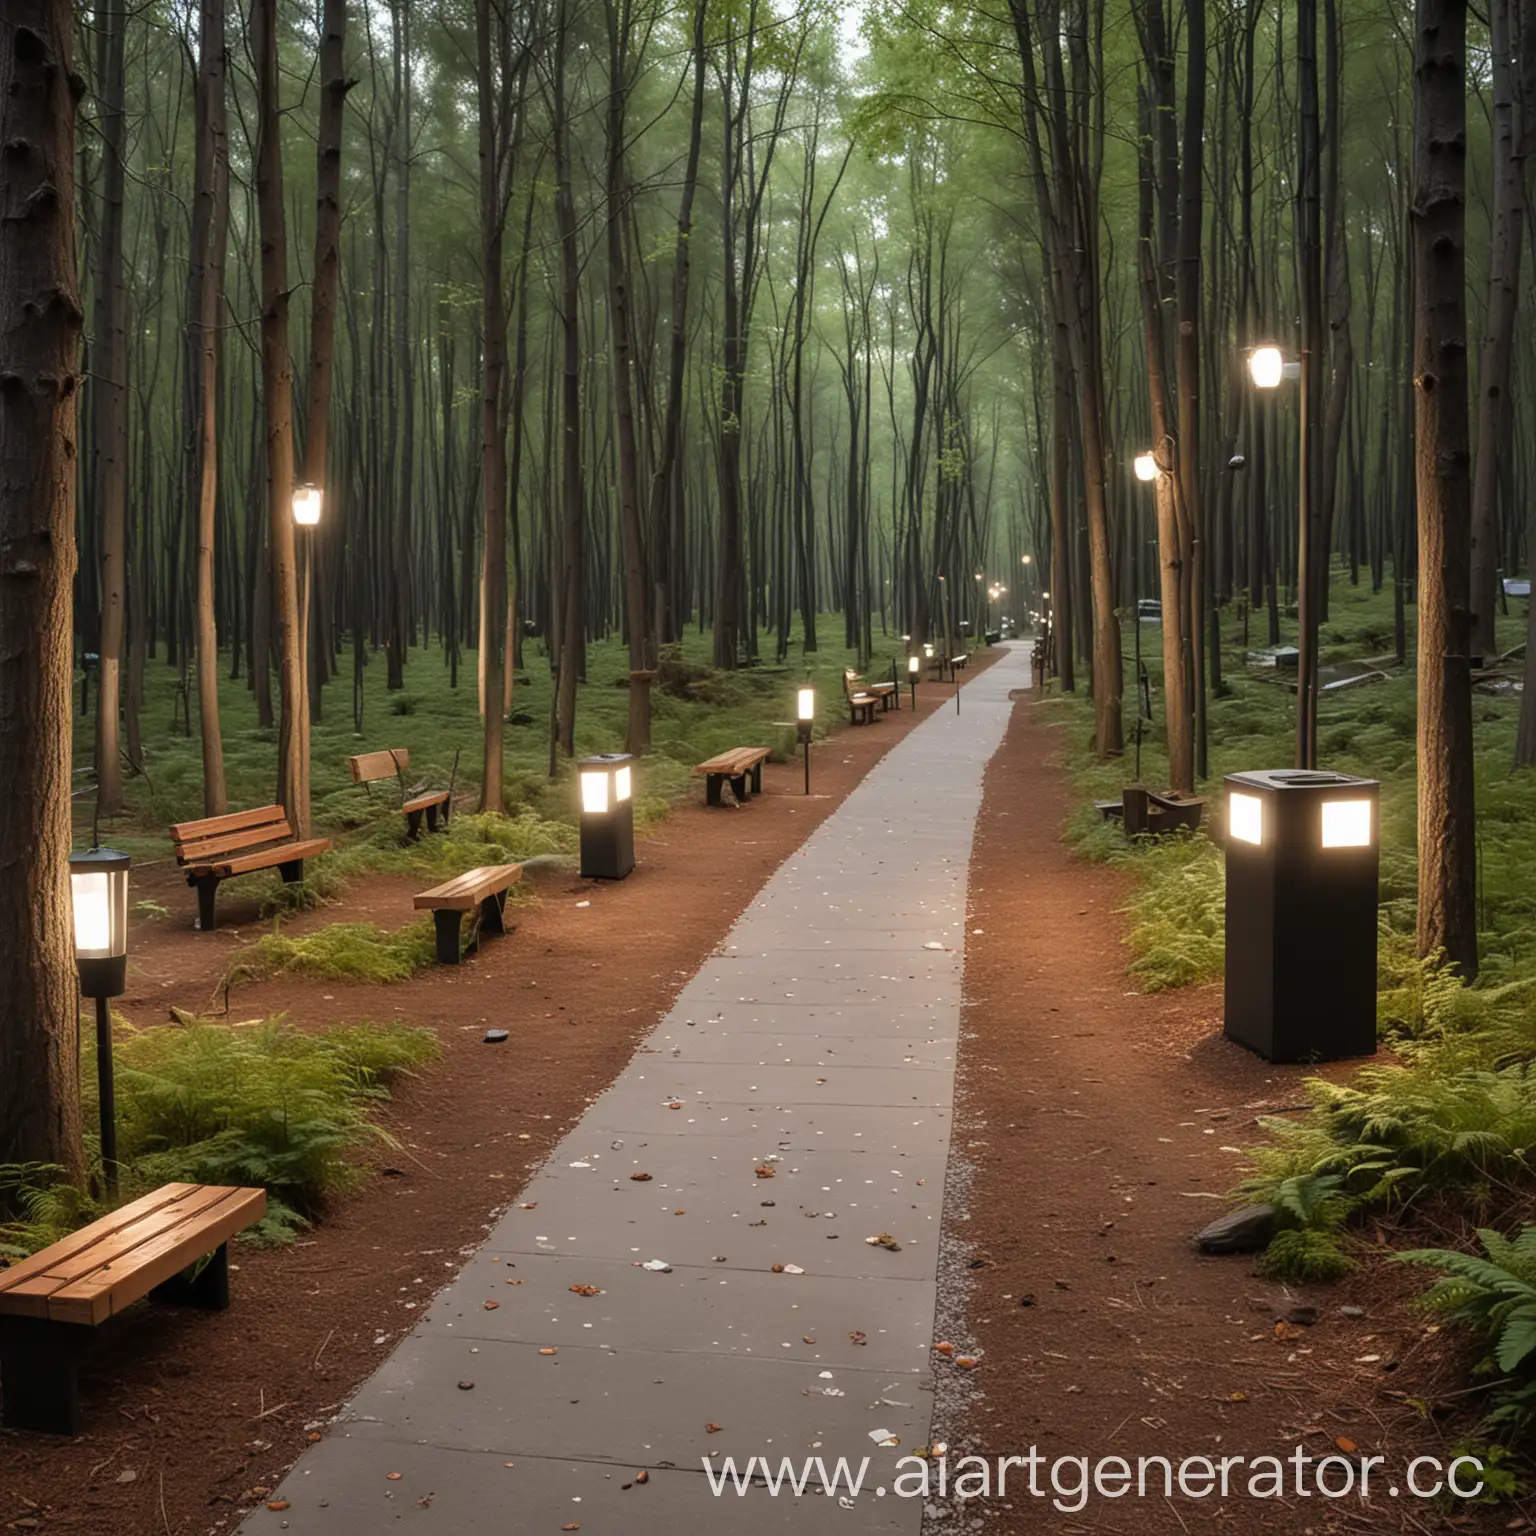 дизайн современная тропа в лесу с фонарями, лавочками, мусорками и камерами видео наблюдения 